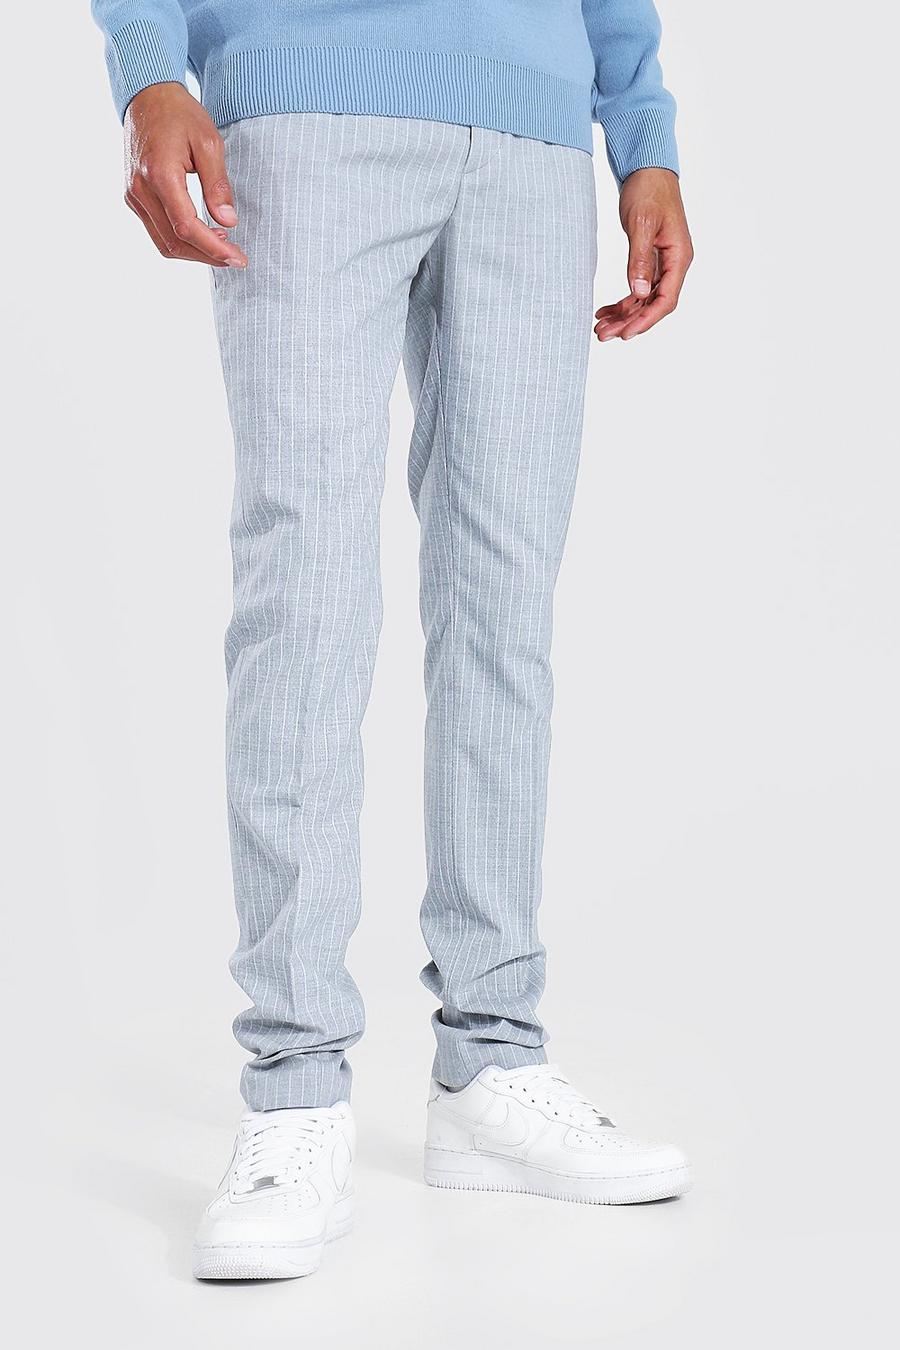 אפור gris מכנסי סקיני עם פסים דקים לגברים גבוהים